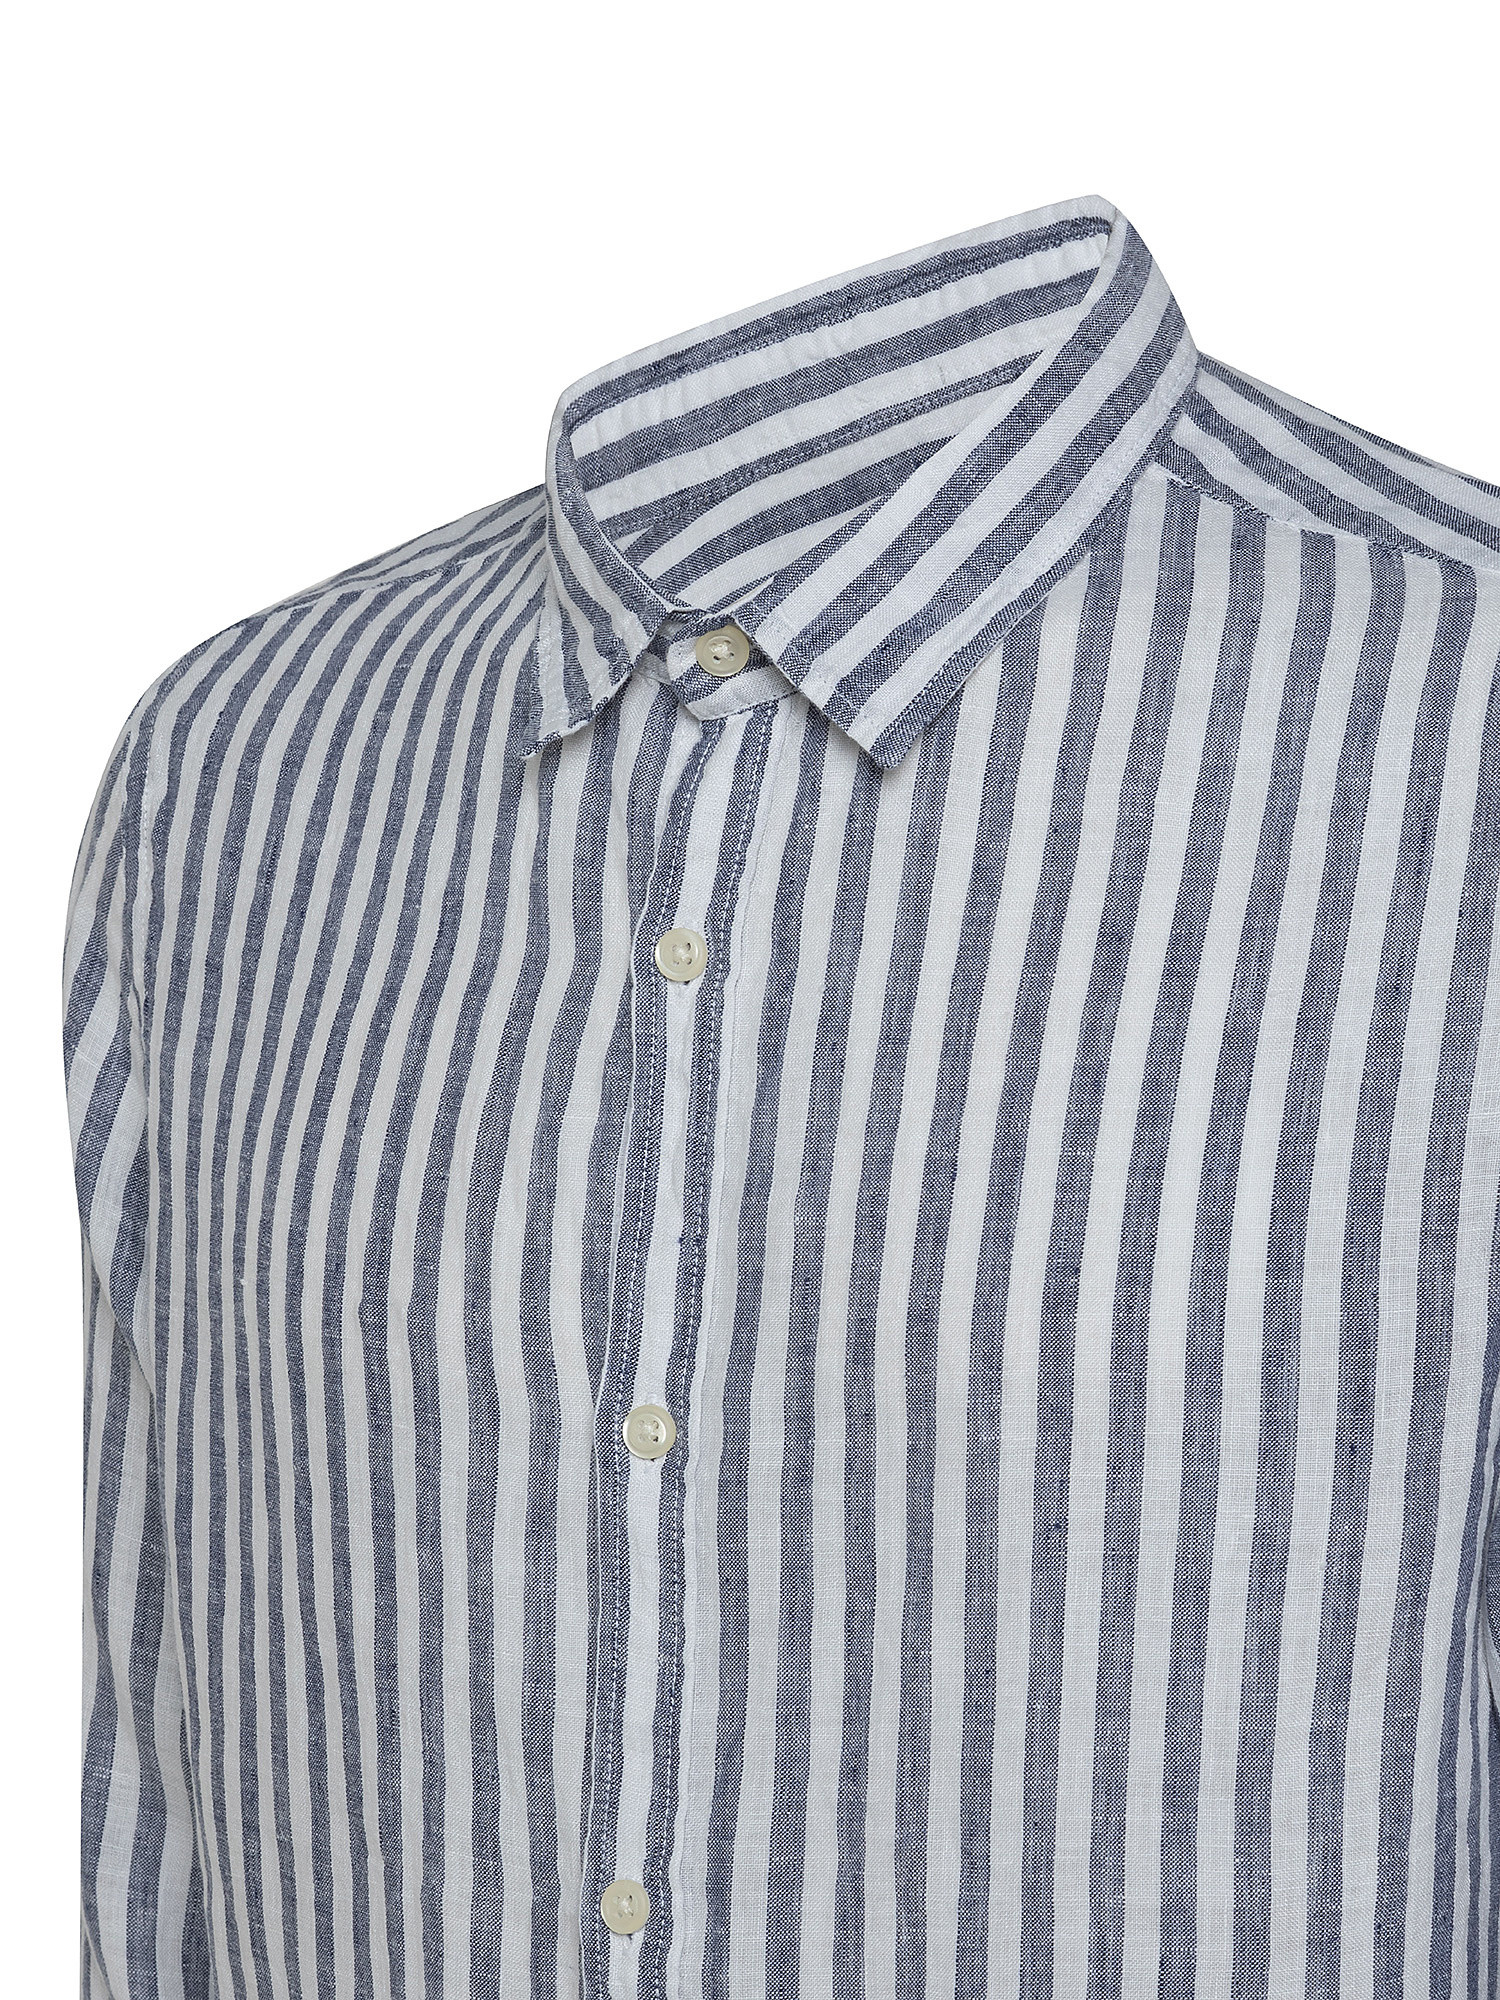 Camicia puro lino collo francese, Blu chiaro, large image number 2